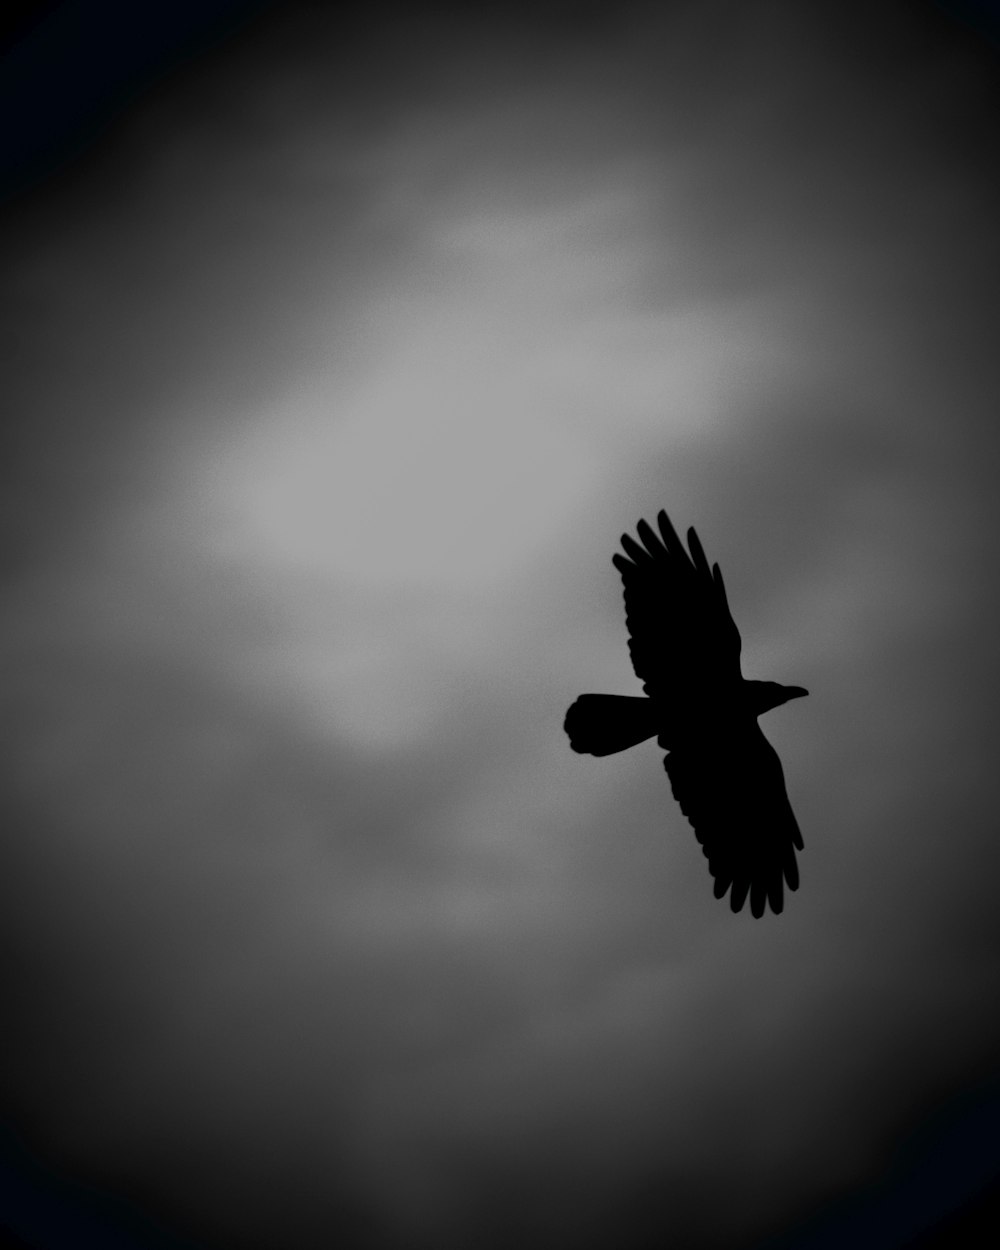 Una foto en blanco y negro de un pájaro volando en el cielo